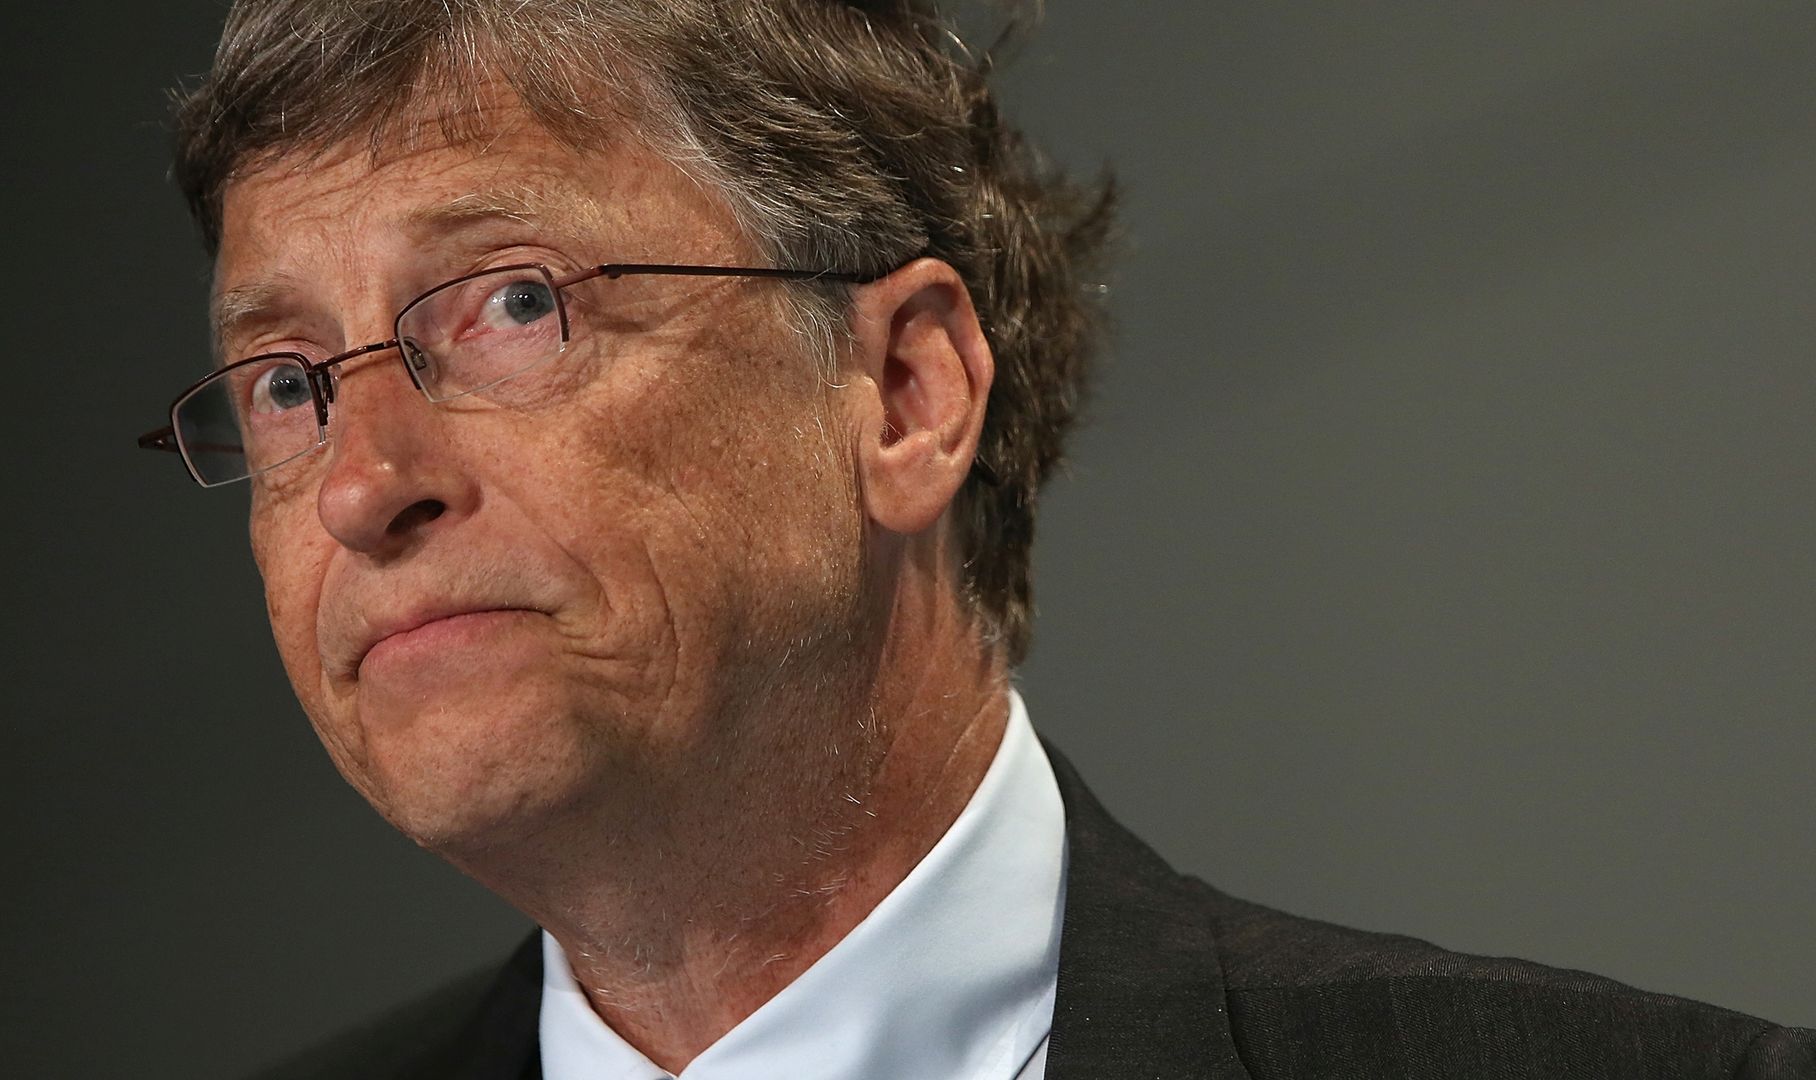 Wpadka Billa Gatesa. Nie chcieli jego pomocy